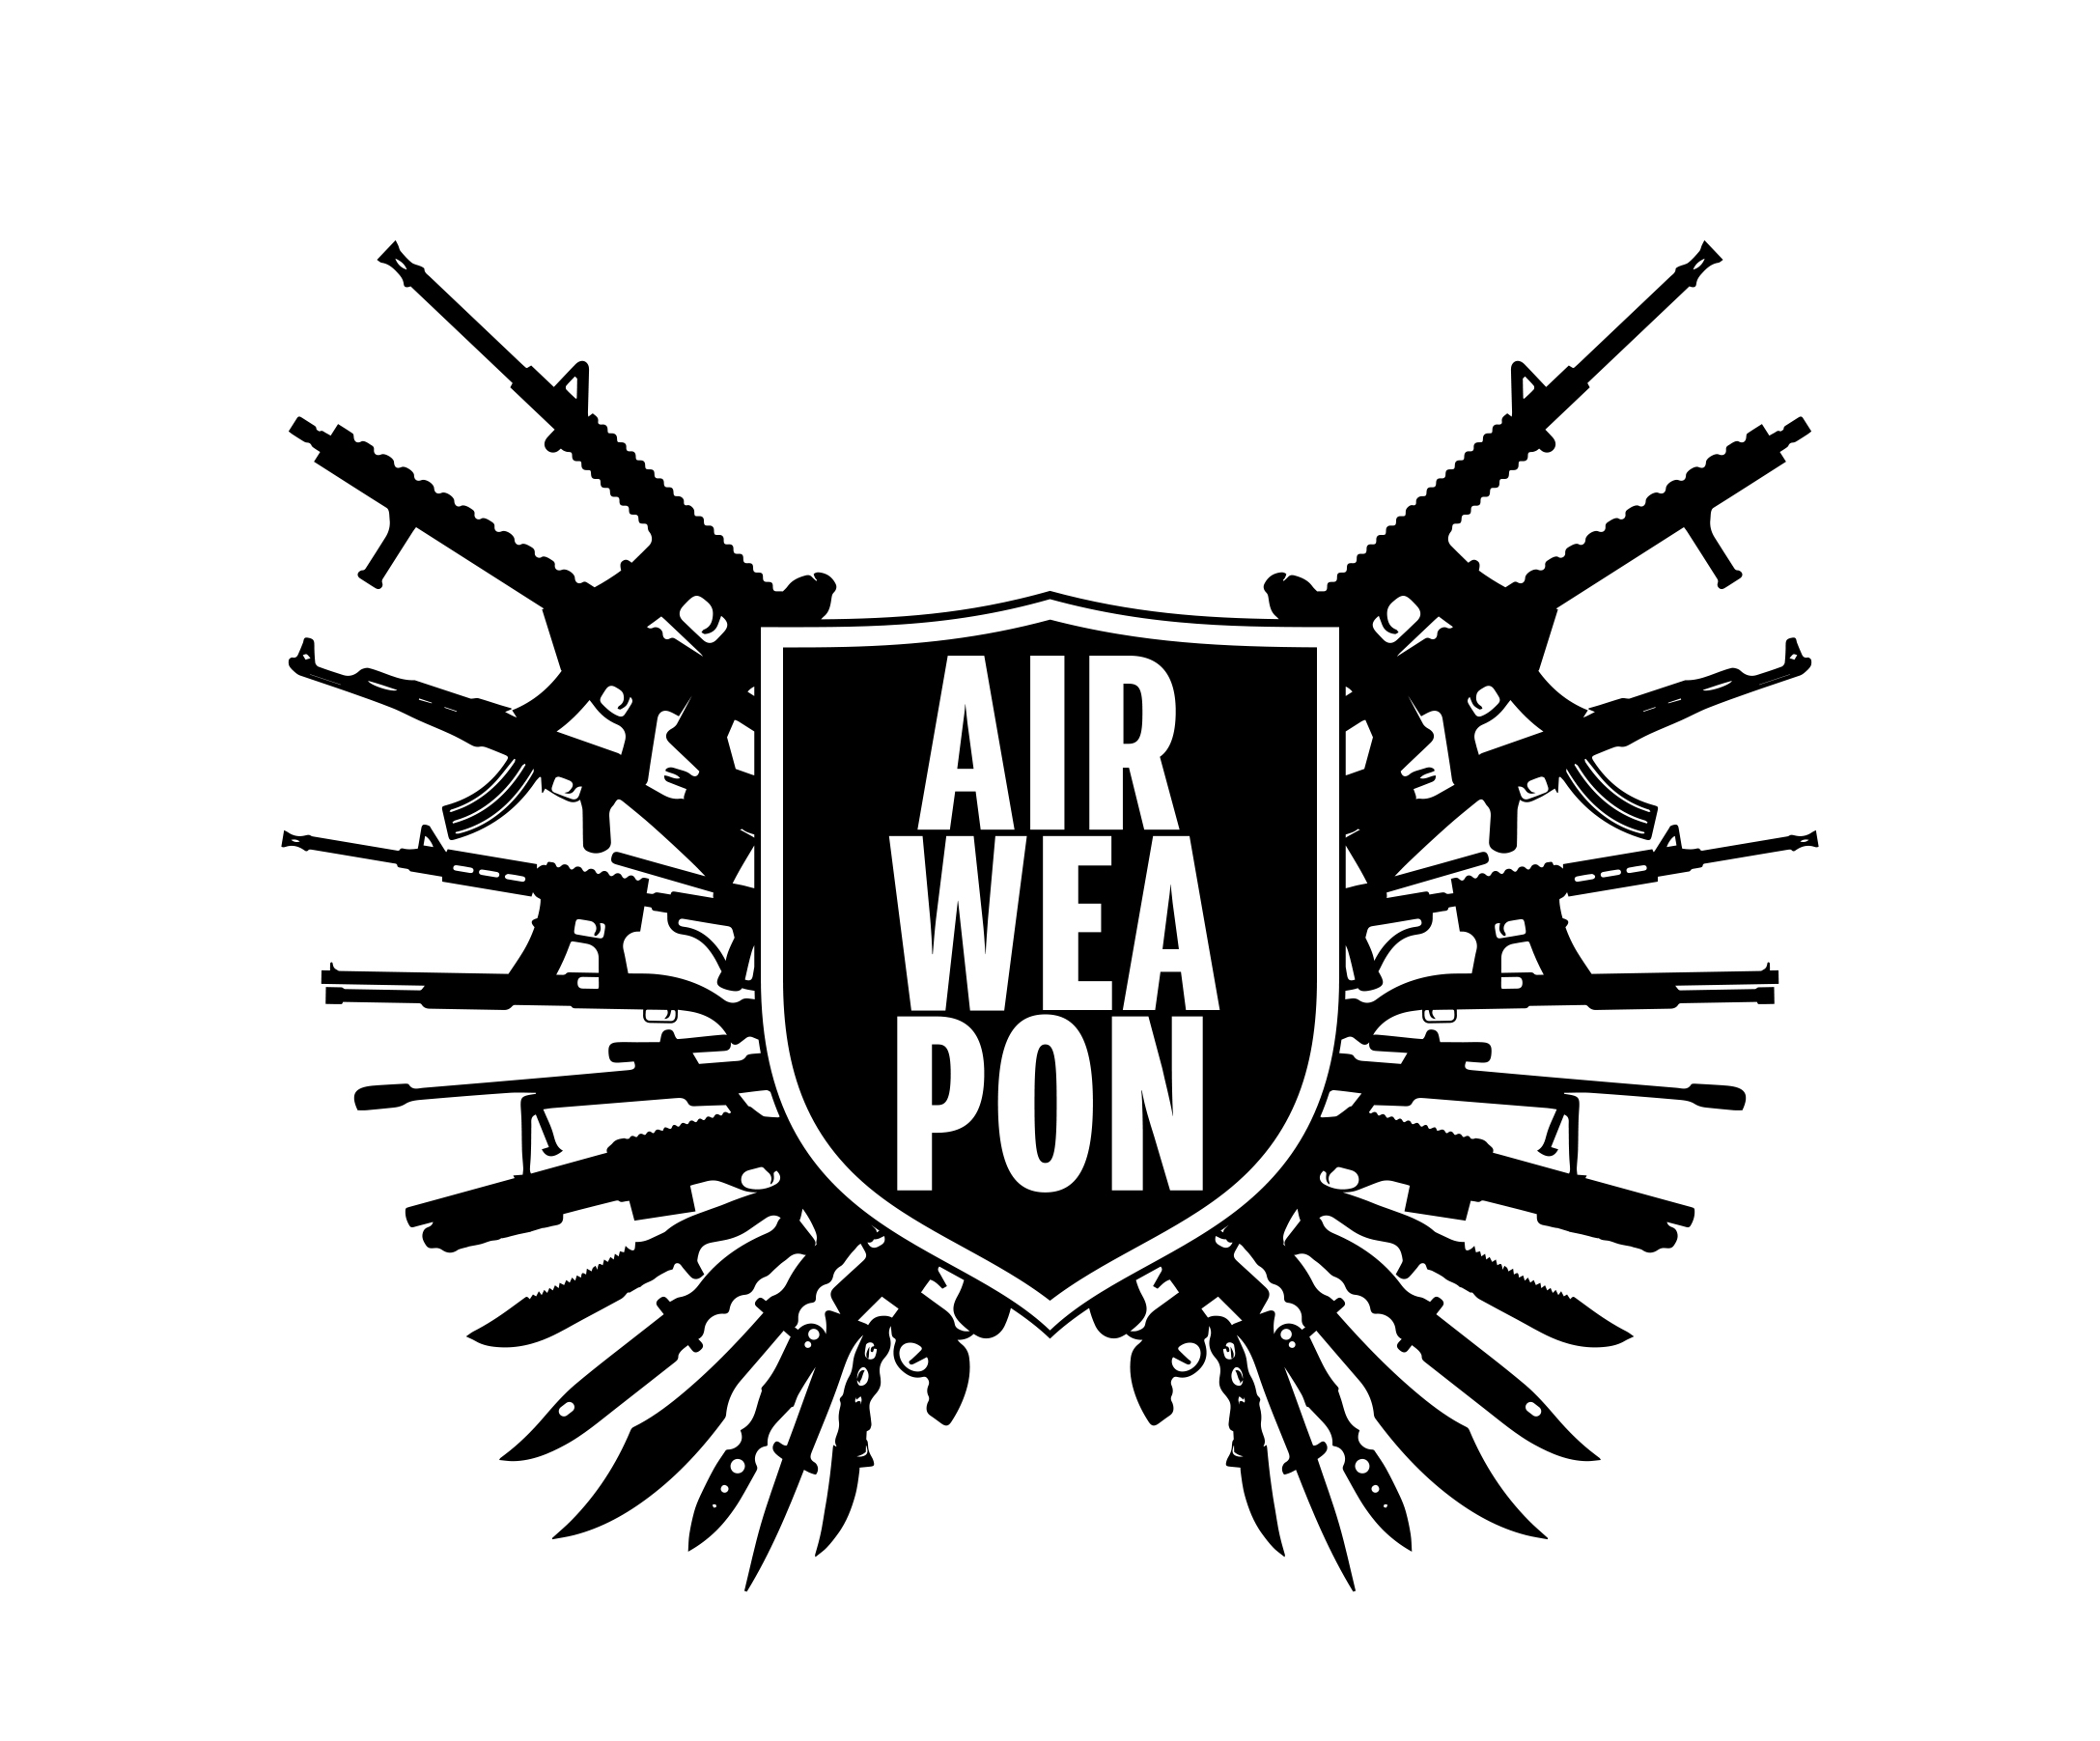 Airweapon